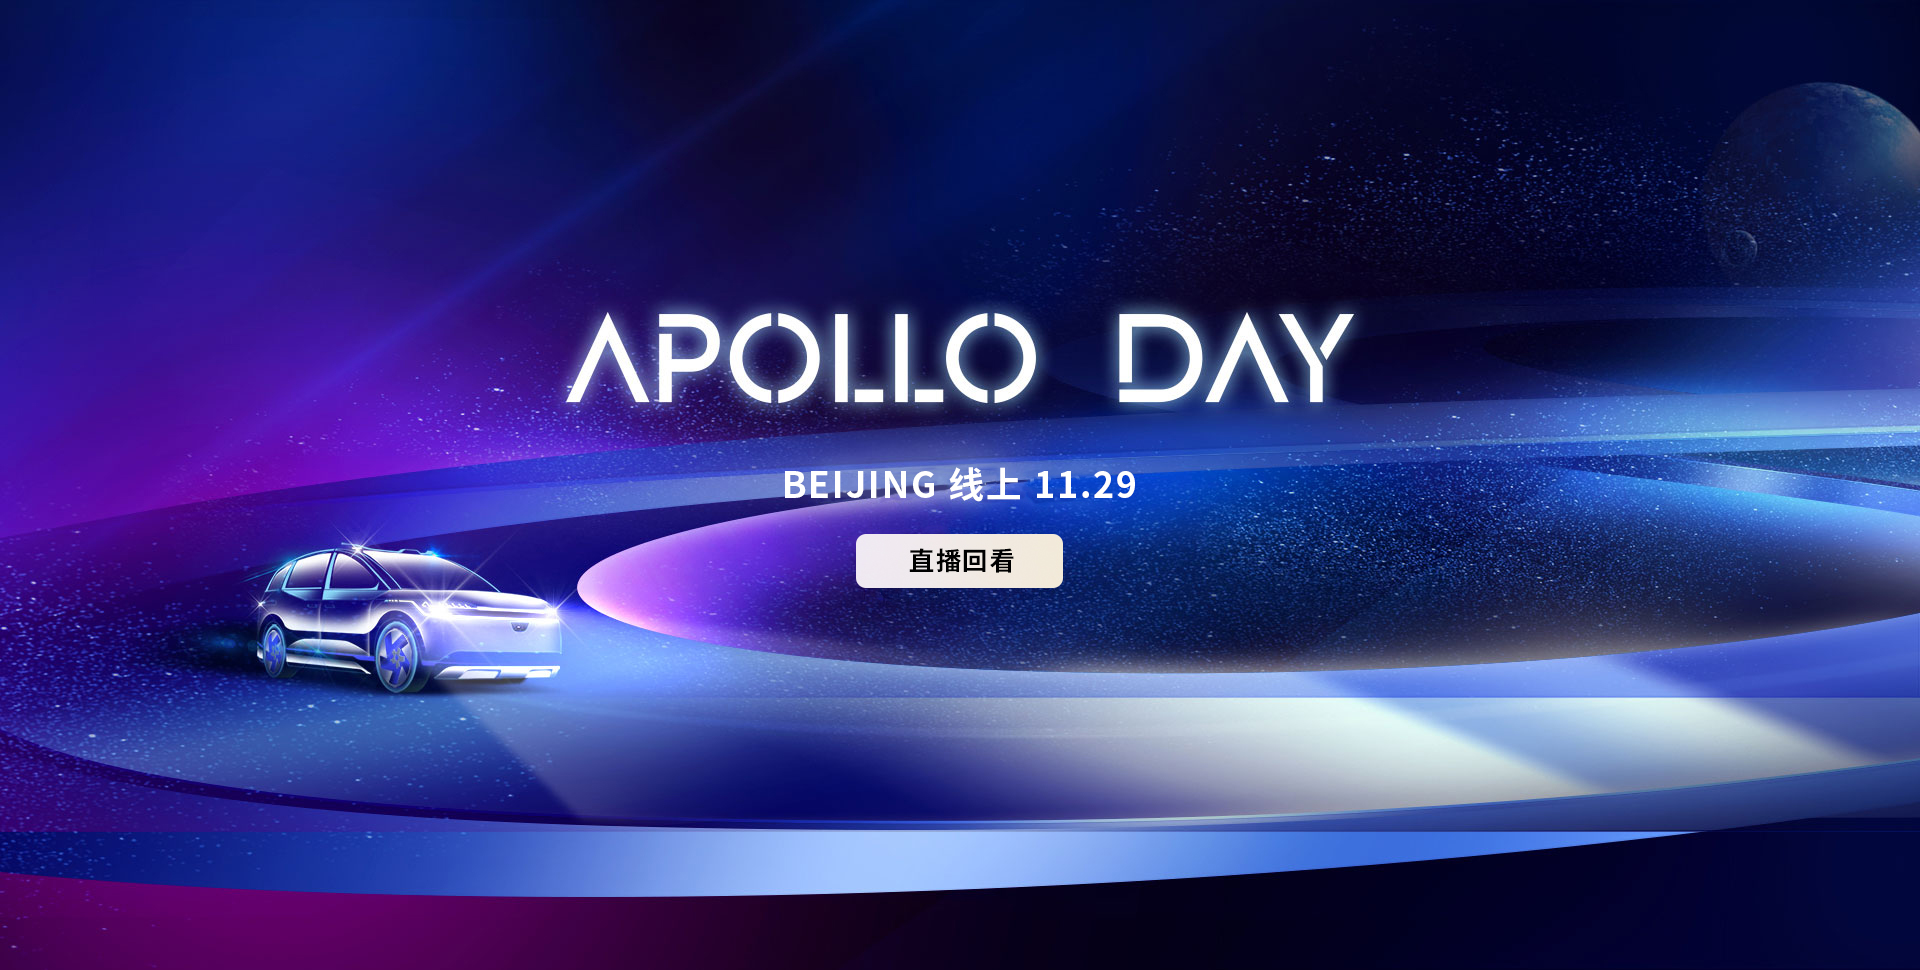 Apollo Day